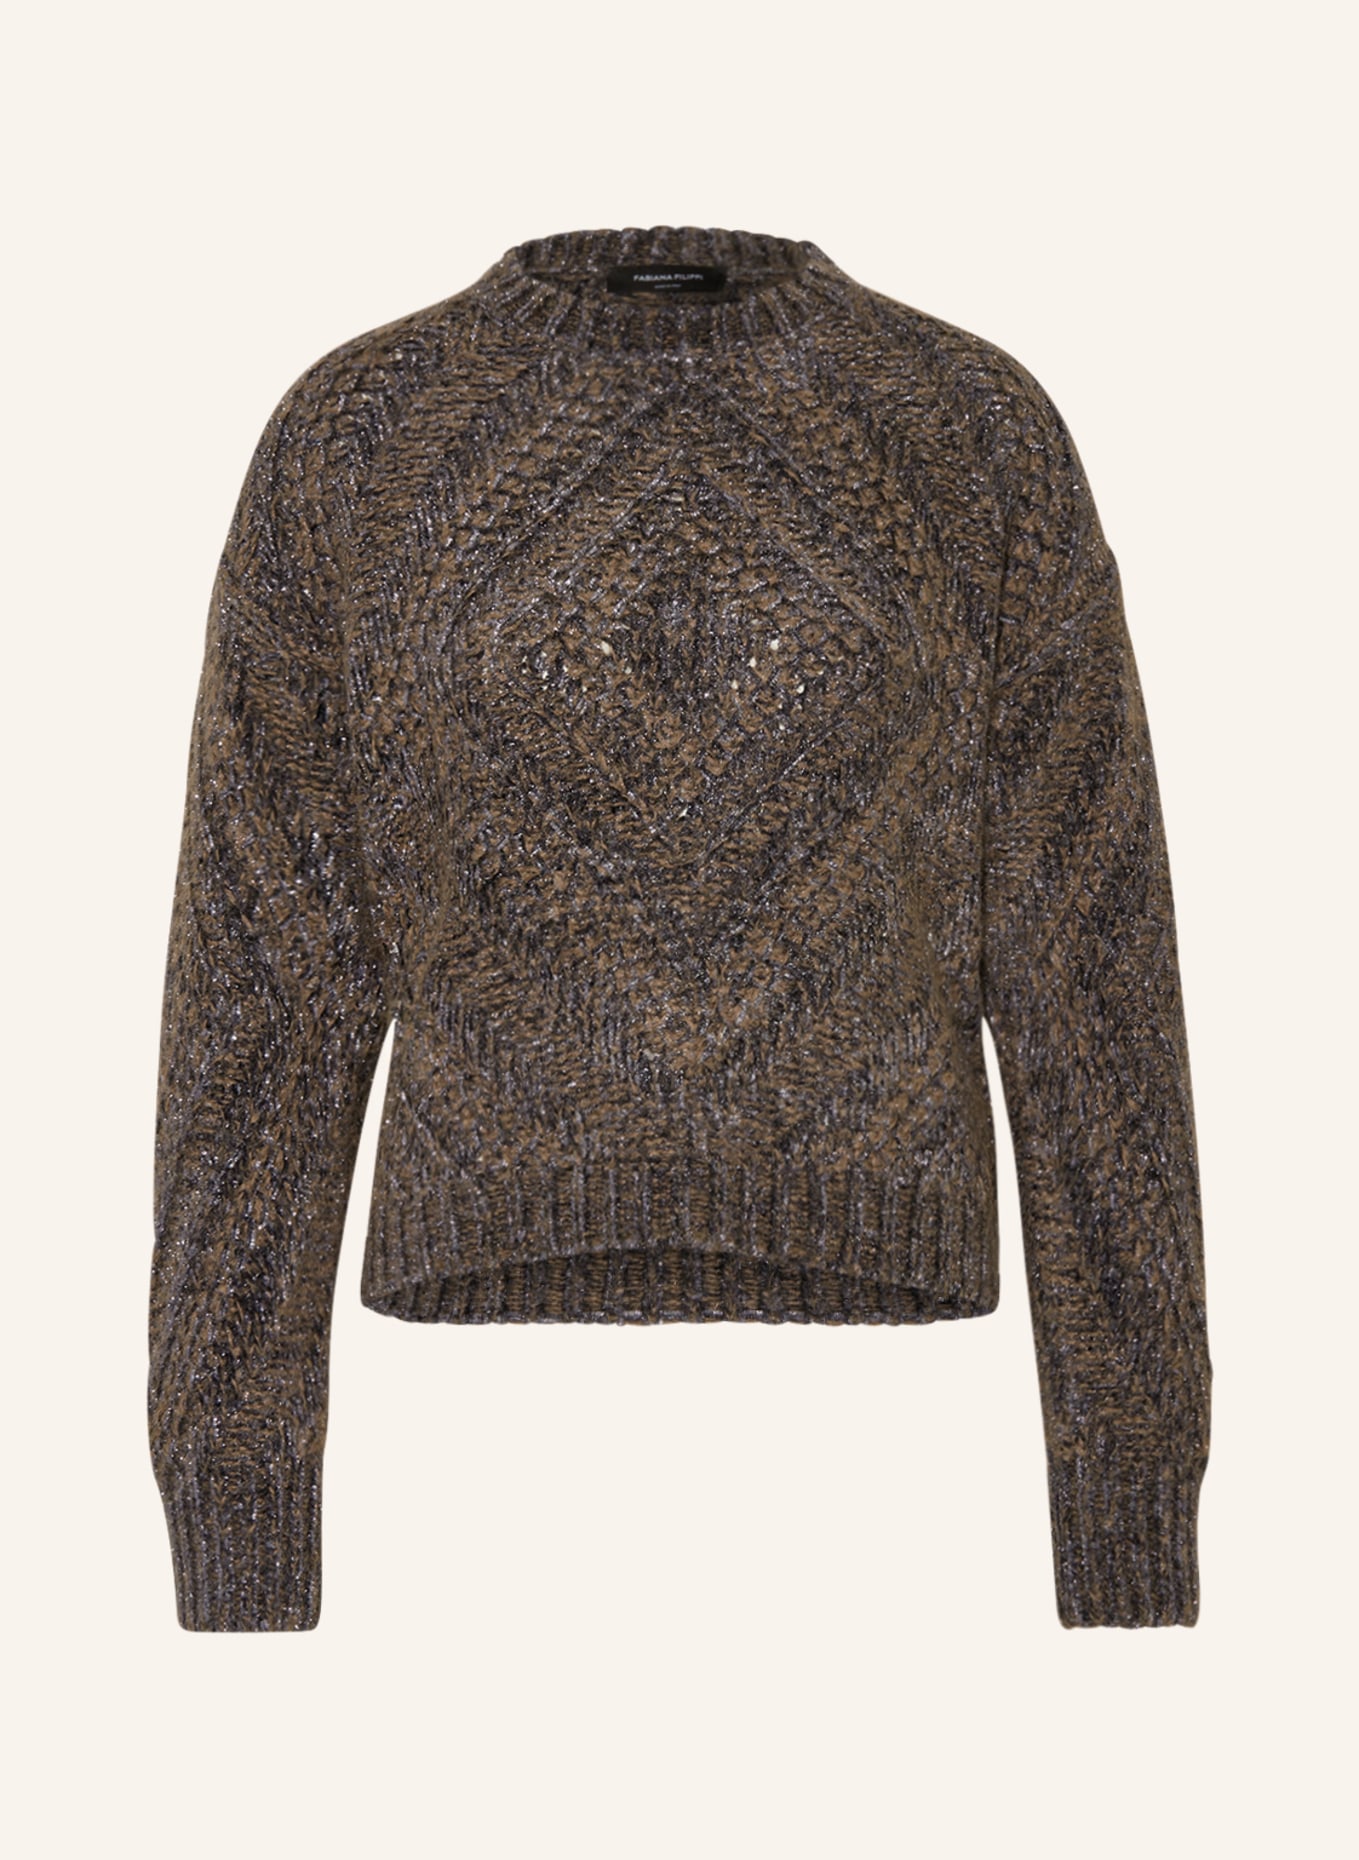 FABIANA FILIPPI Sweater with glitter thread, Color: DARK GRAY/ BROWN (Image 1)